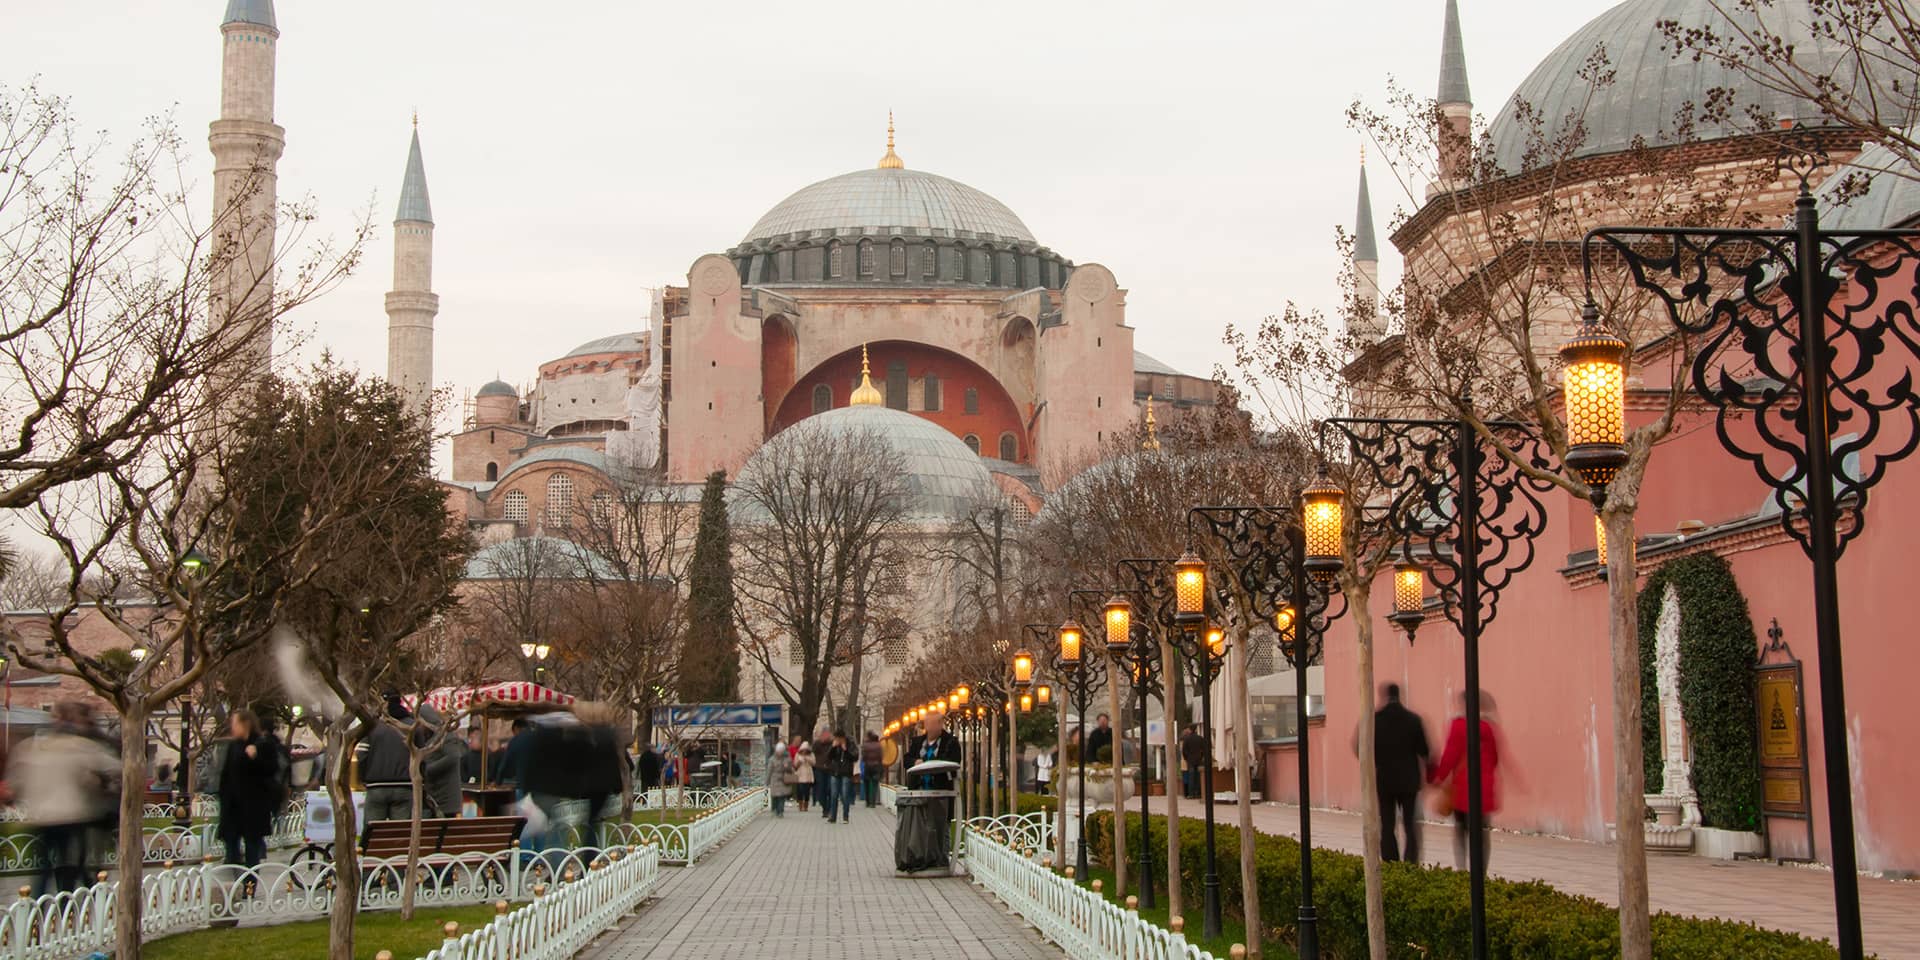 Billede af tyrkisk moske